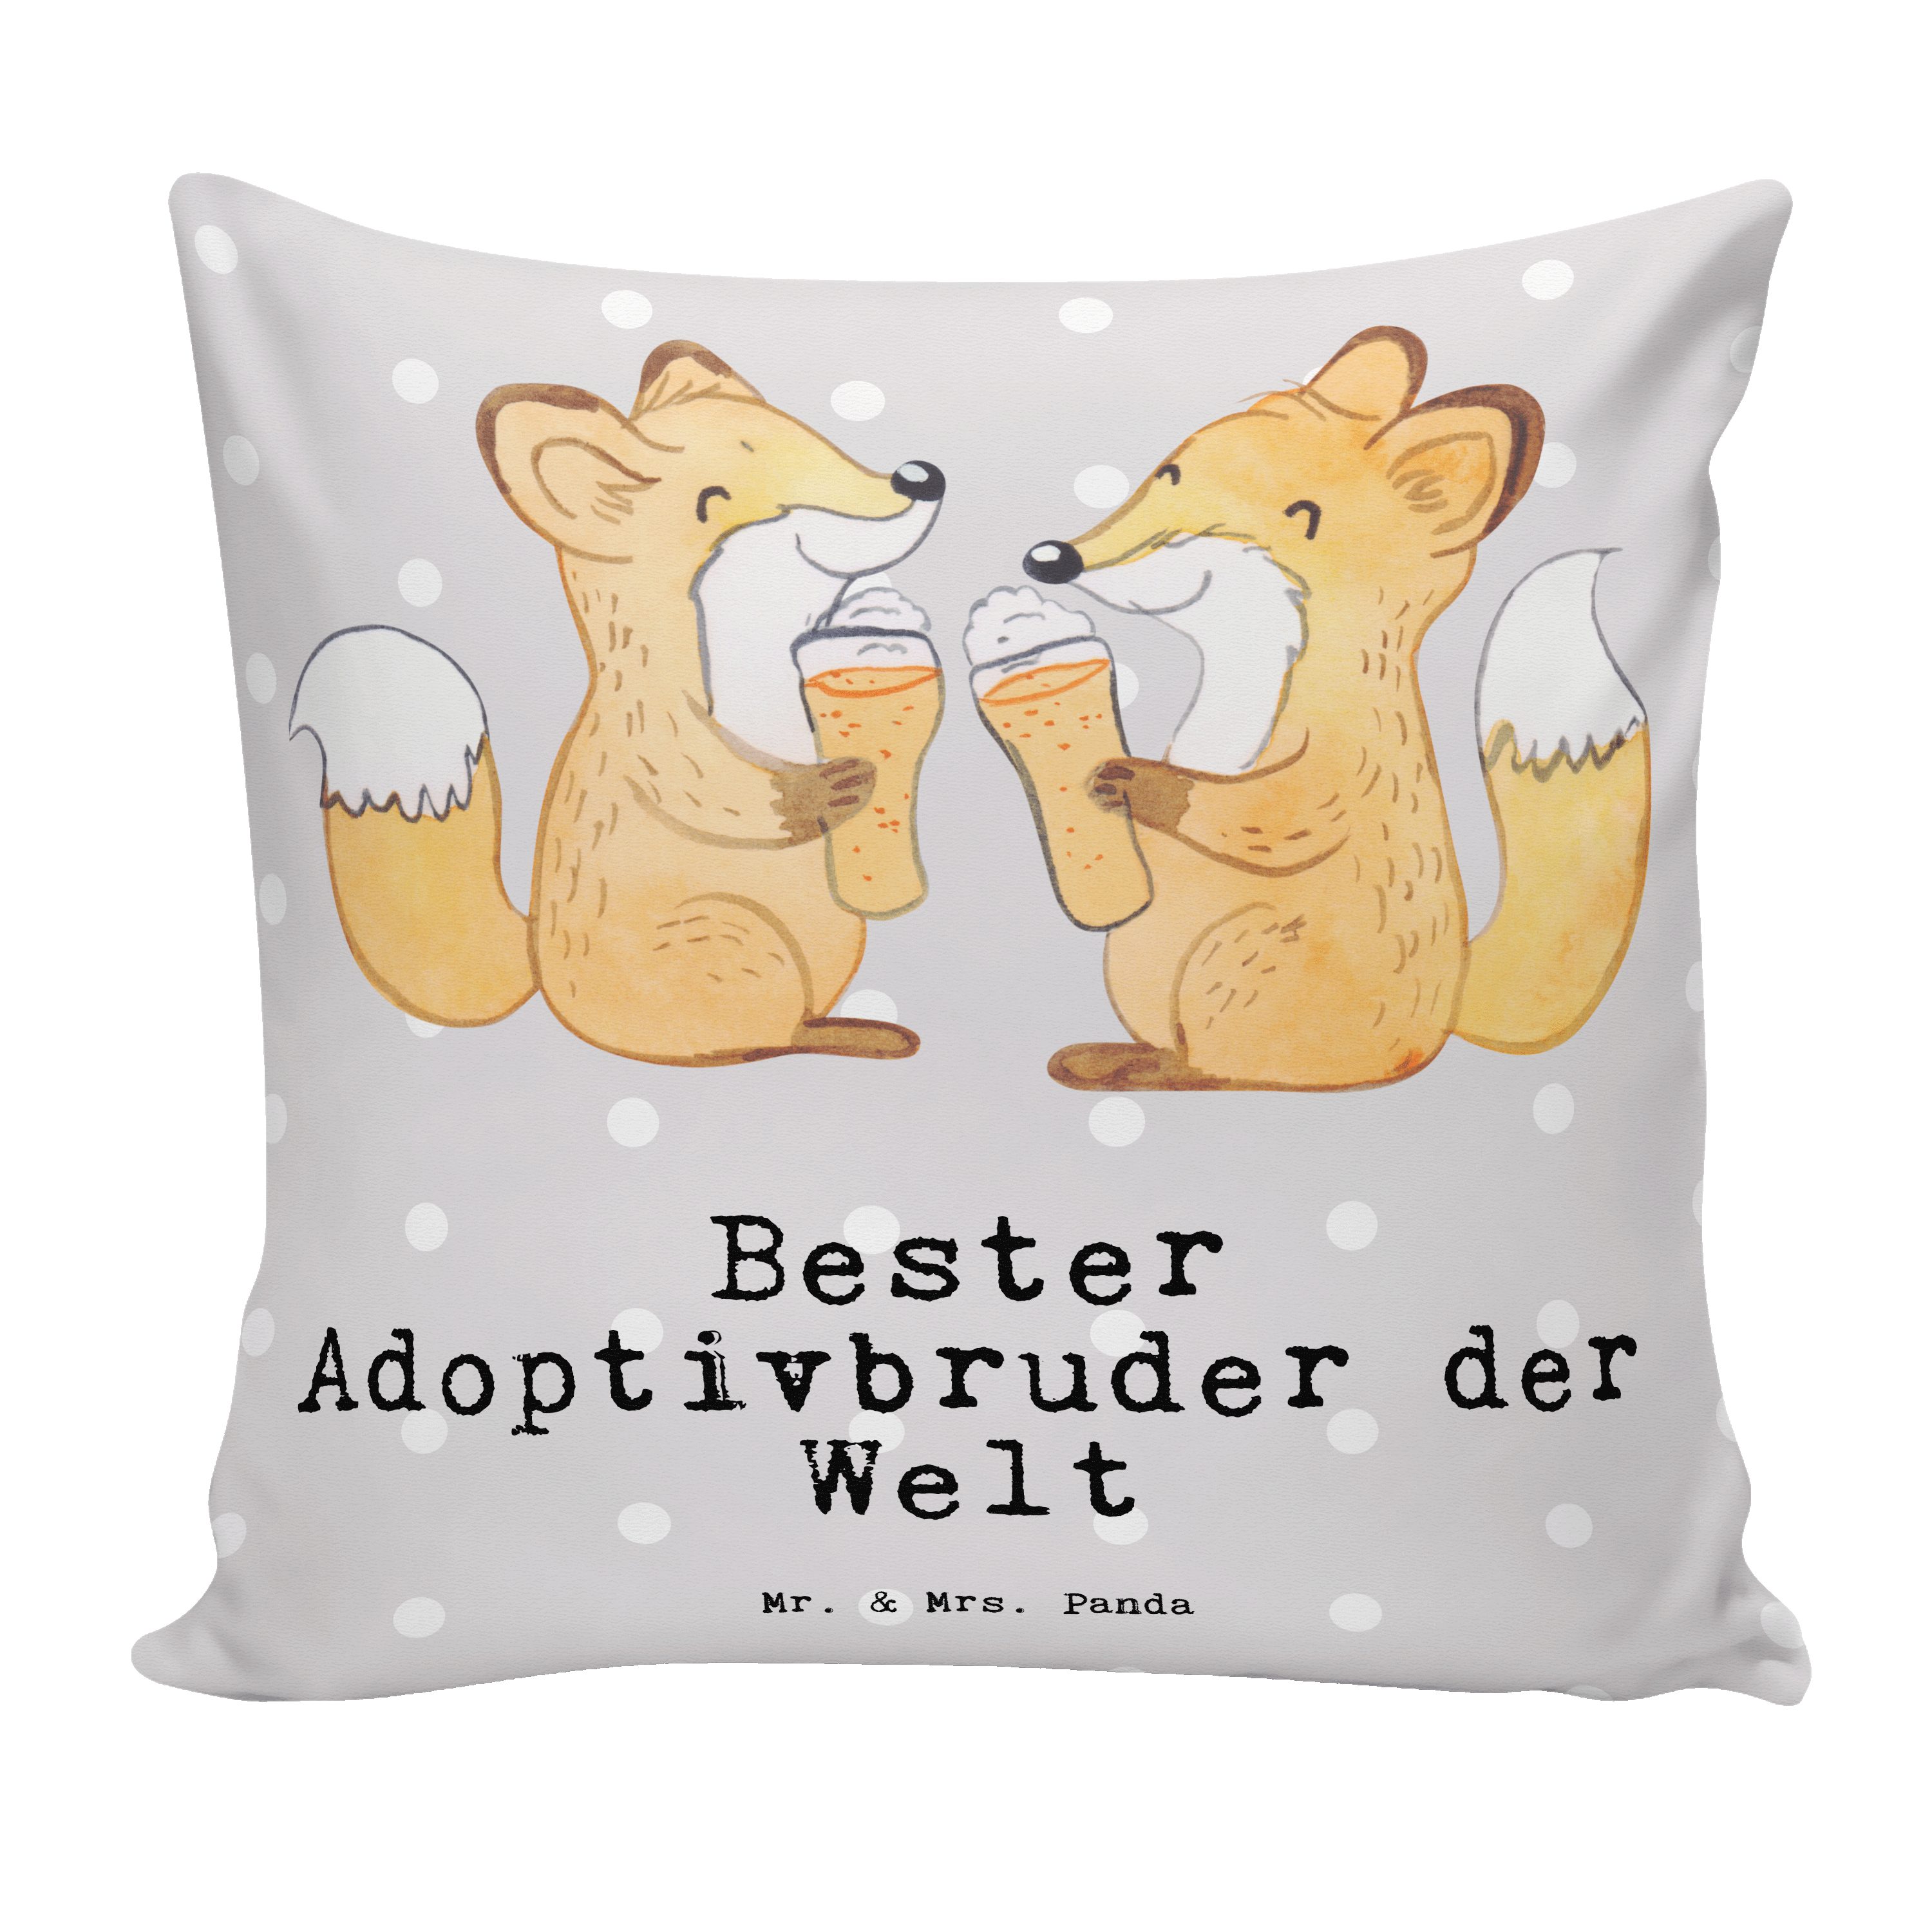 Mr. & Mrs. Panda Dekokissen Fuchs Bester Adoptivbruder der Welt - Grau Pastell - Geschenk, Bedank